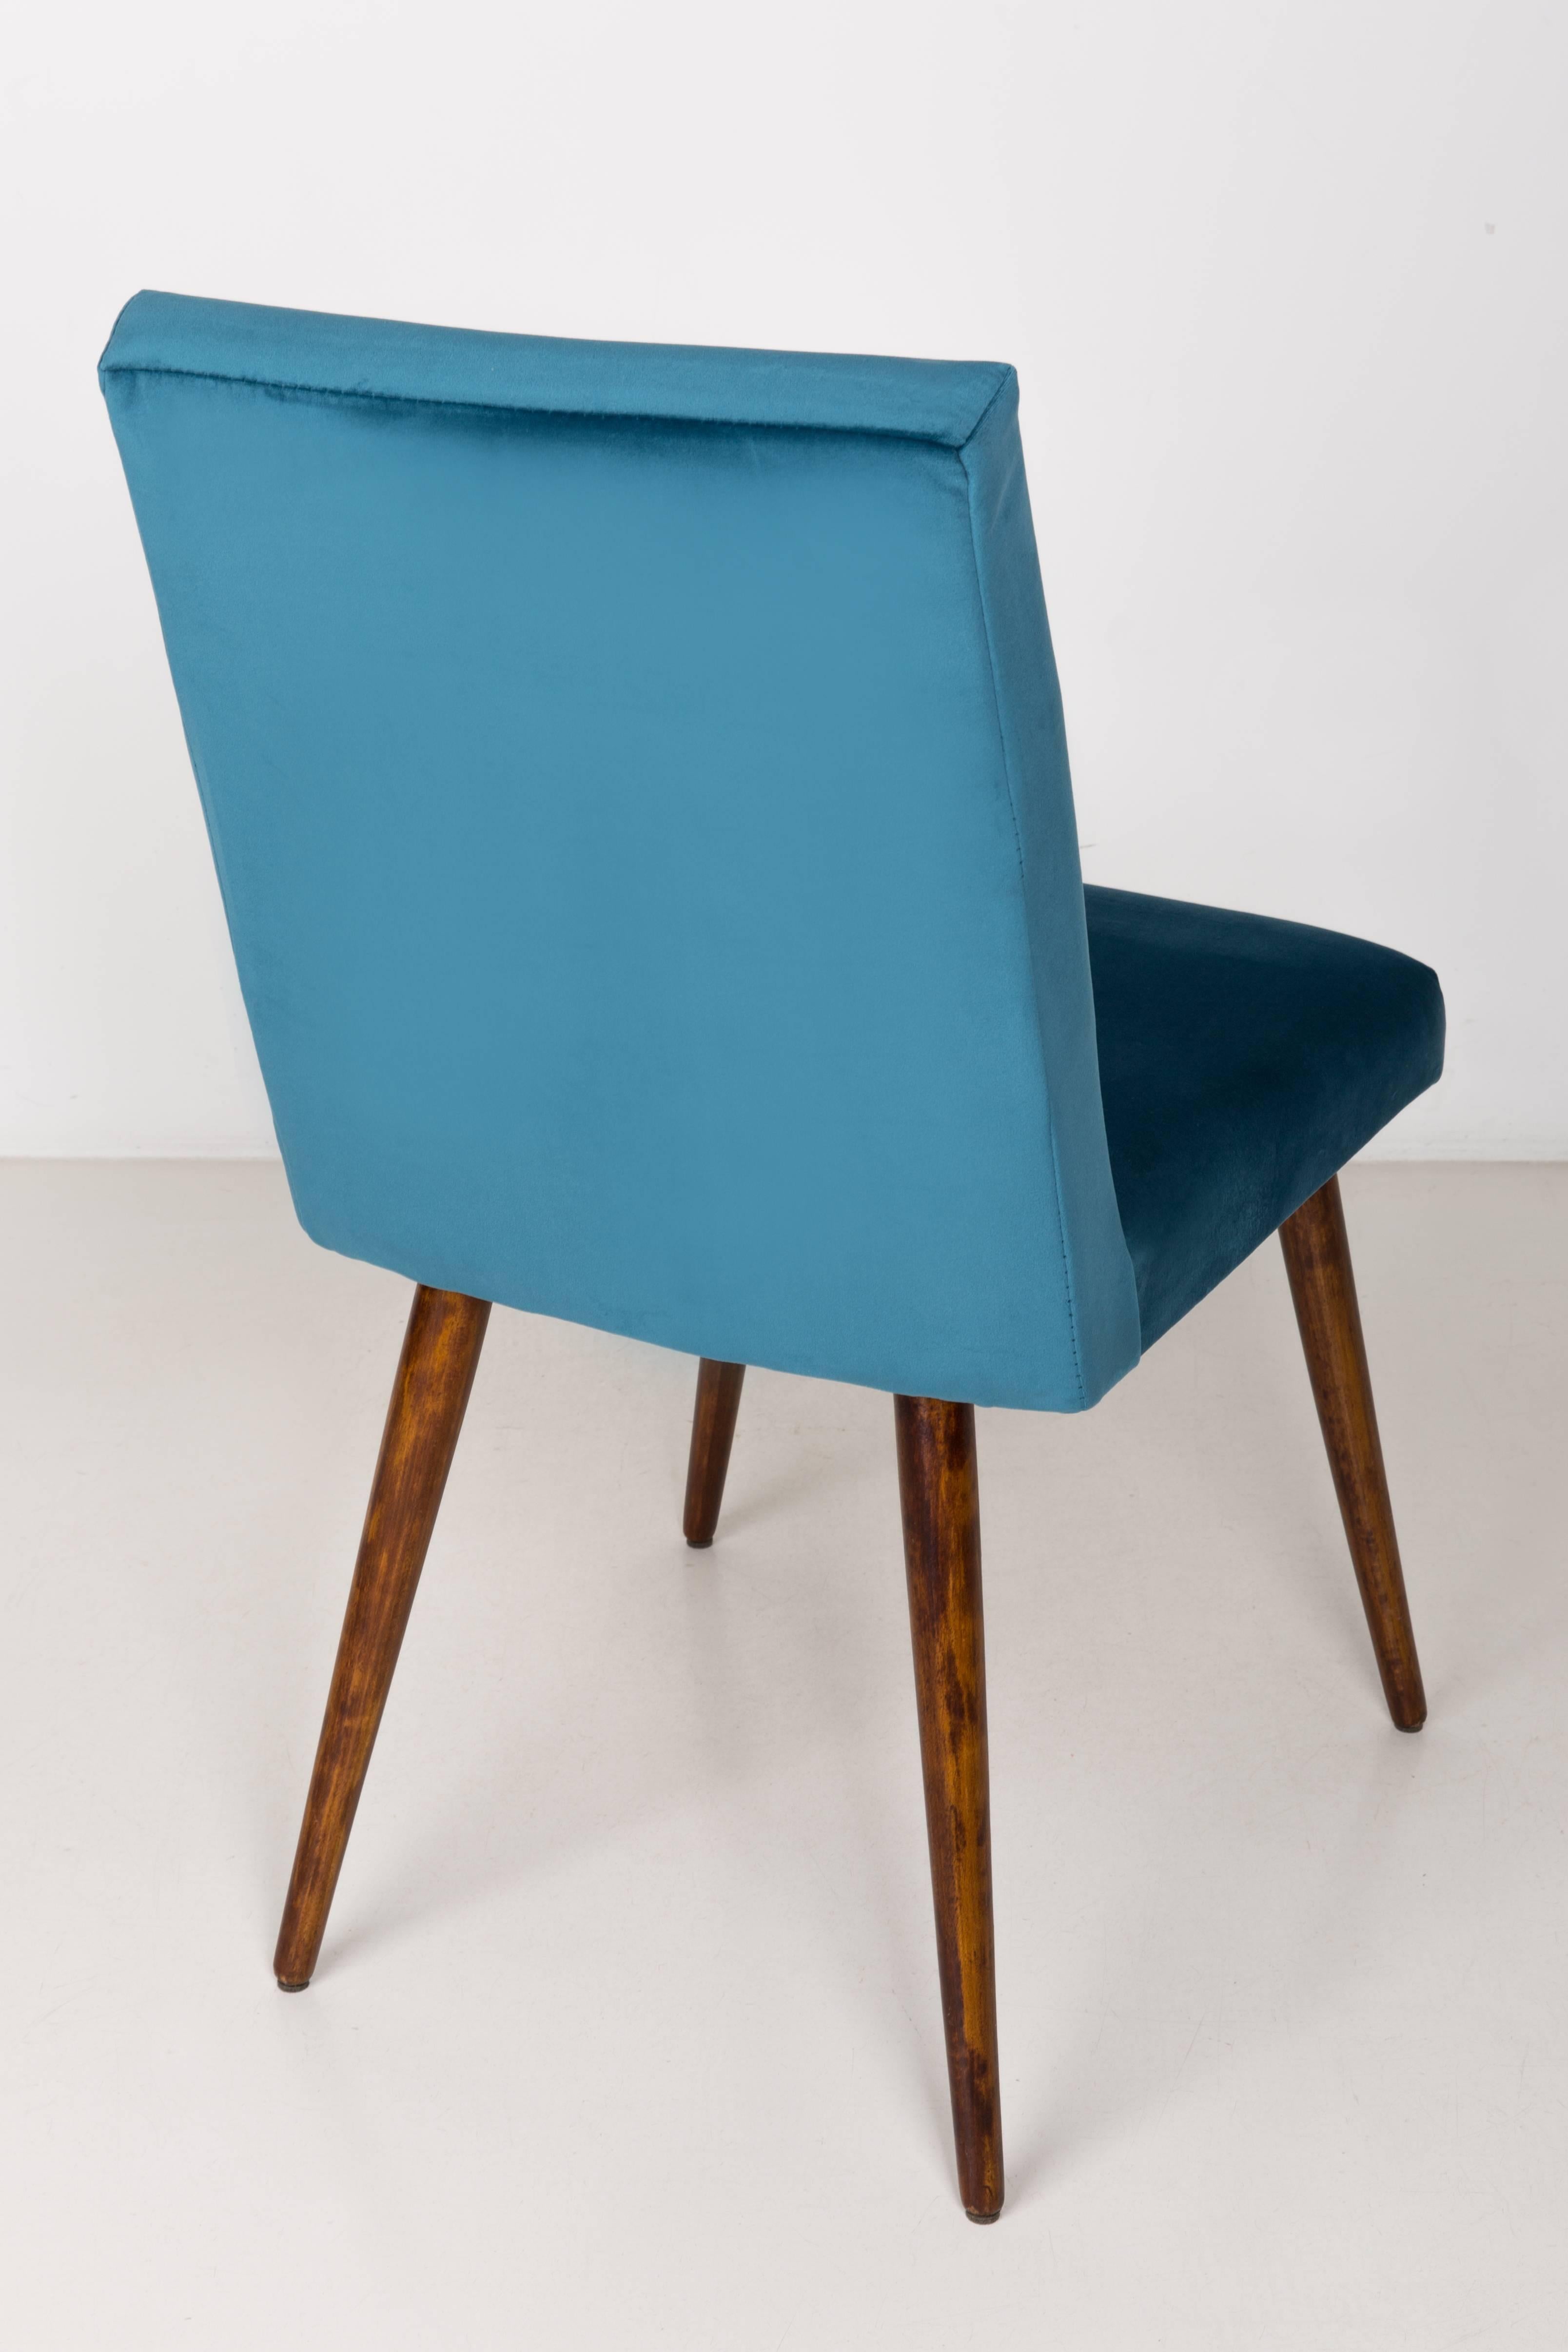 petrol blue chair